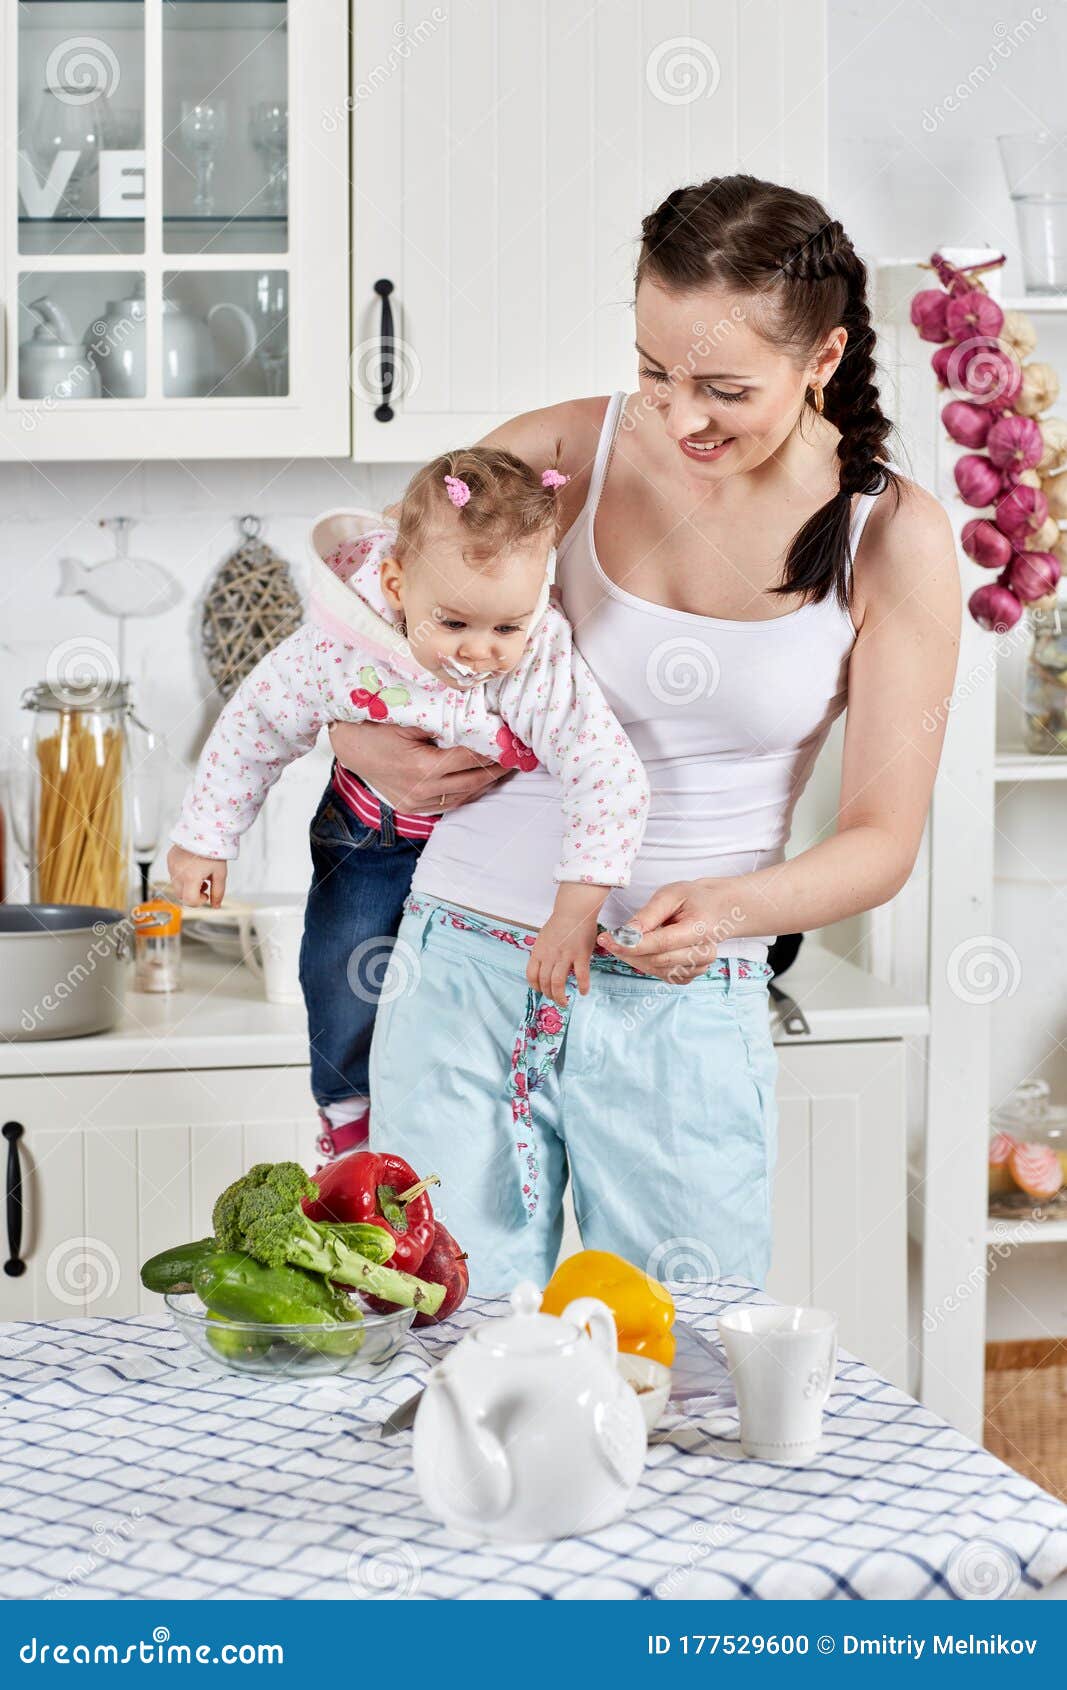 妈妈喂宝宝吃饭-蓝牛仔影像-中国原创广告影像素材